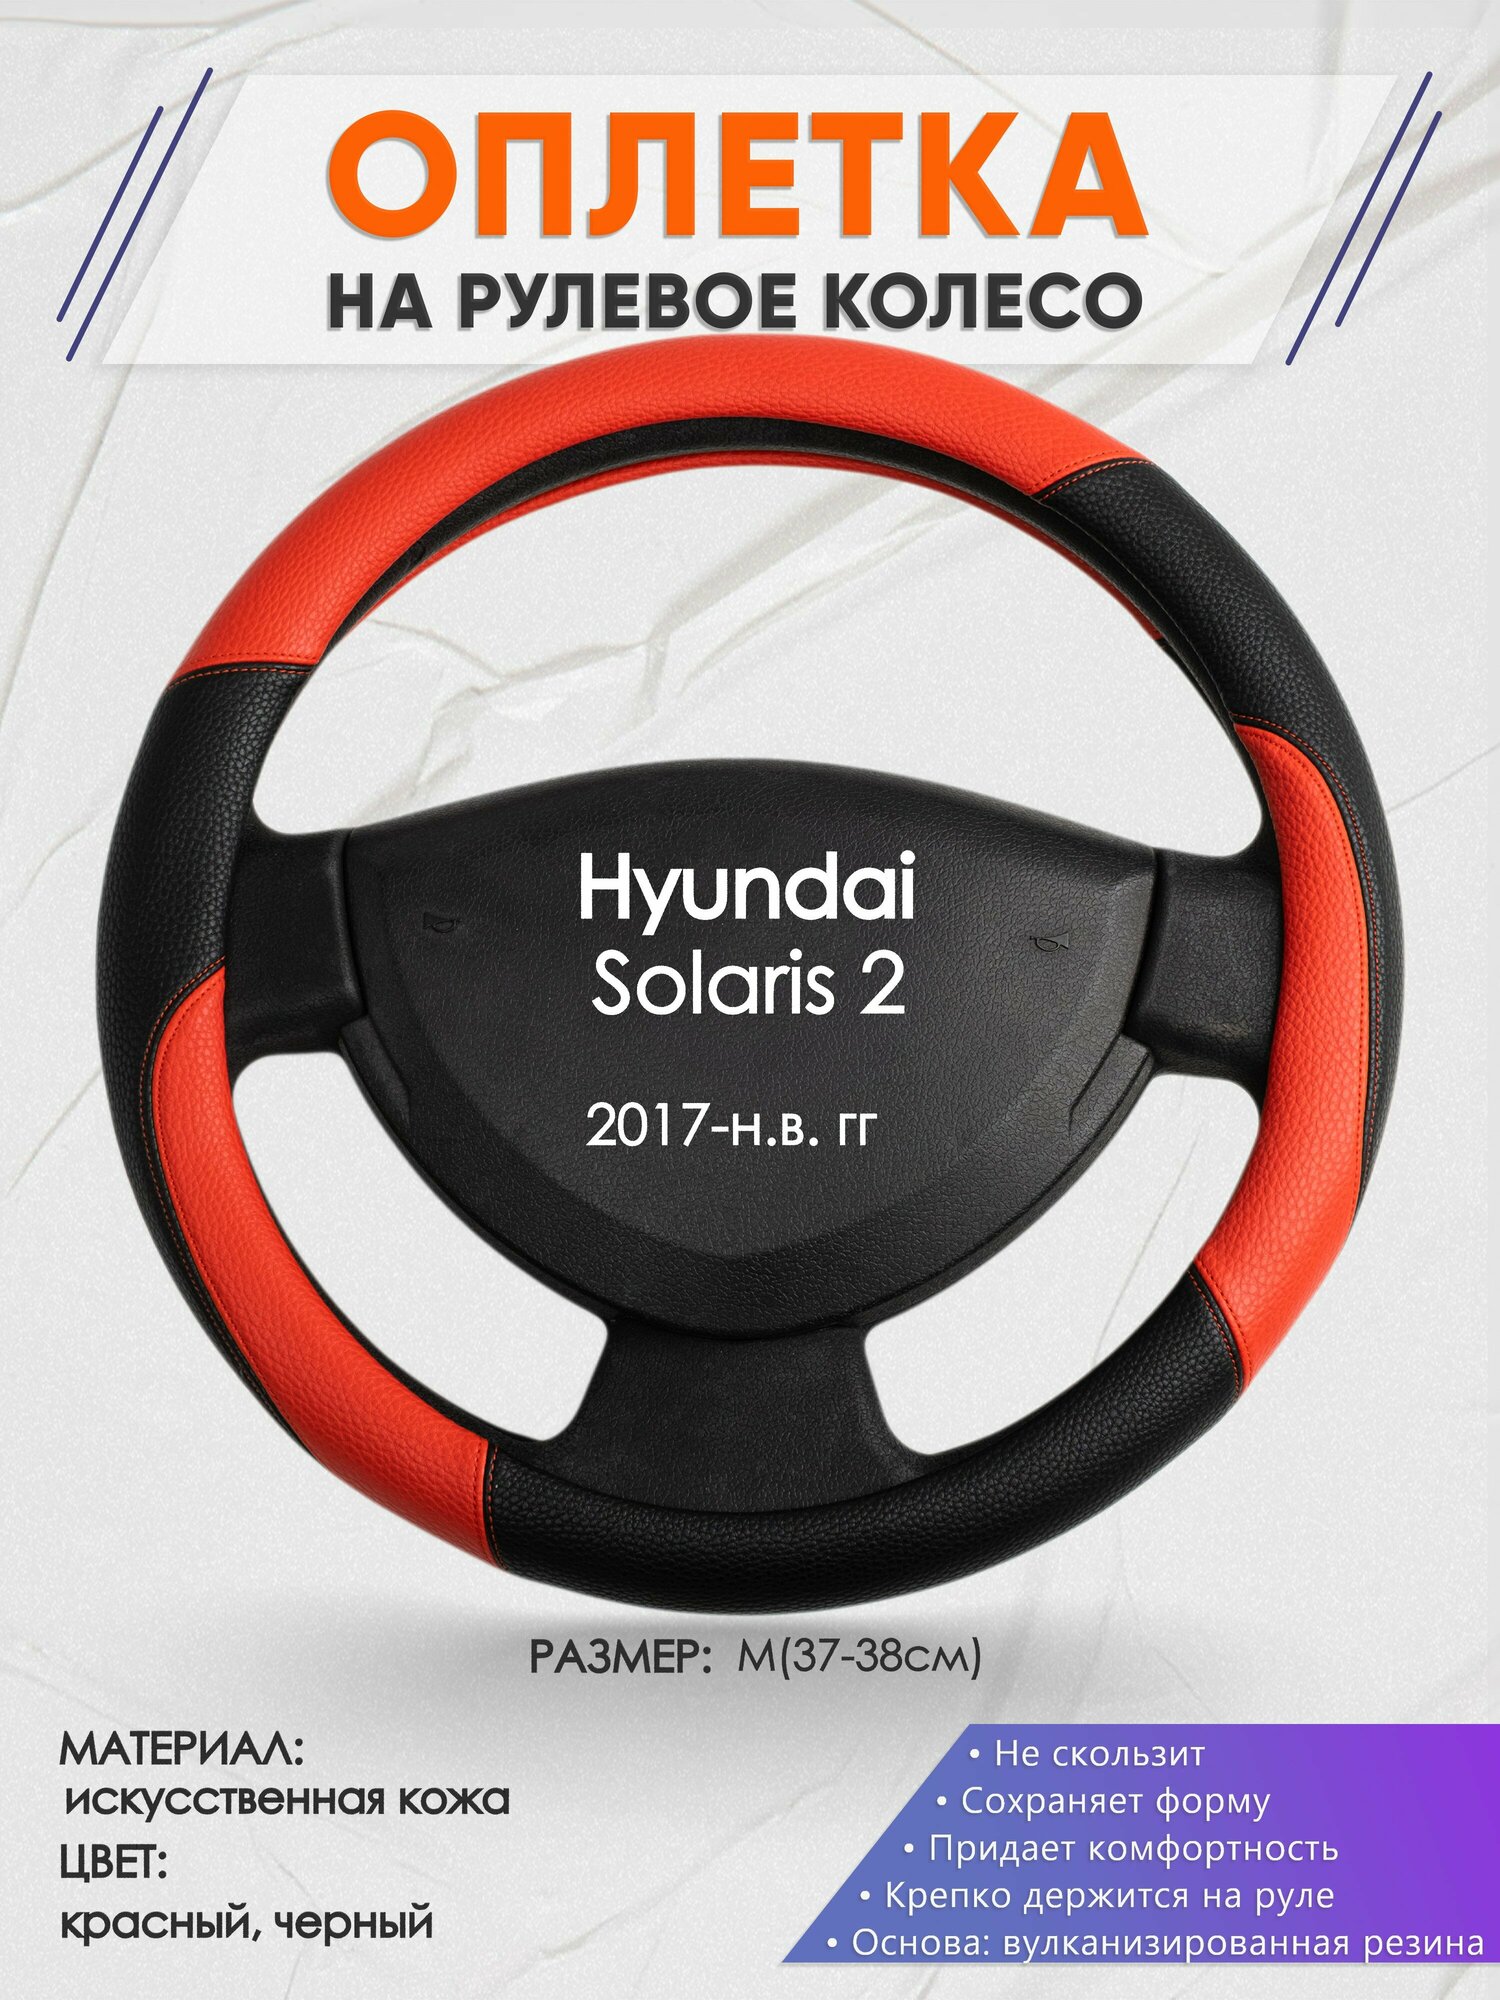 Оплетка на руль для Hyundai Solaris 2(Хендай Солярис 2) 2017-н. в, M(37-38см), Искусственная кожа 63